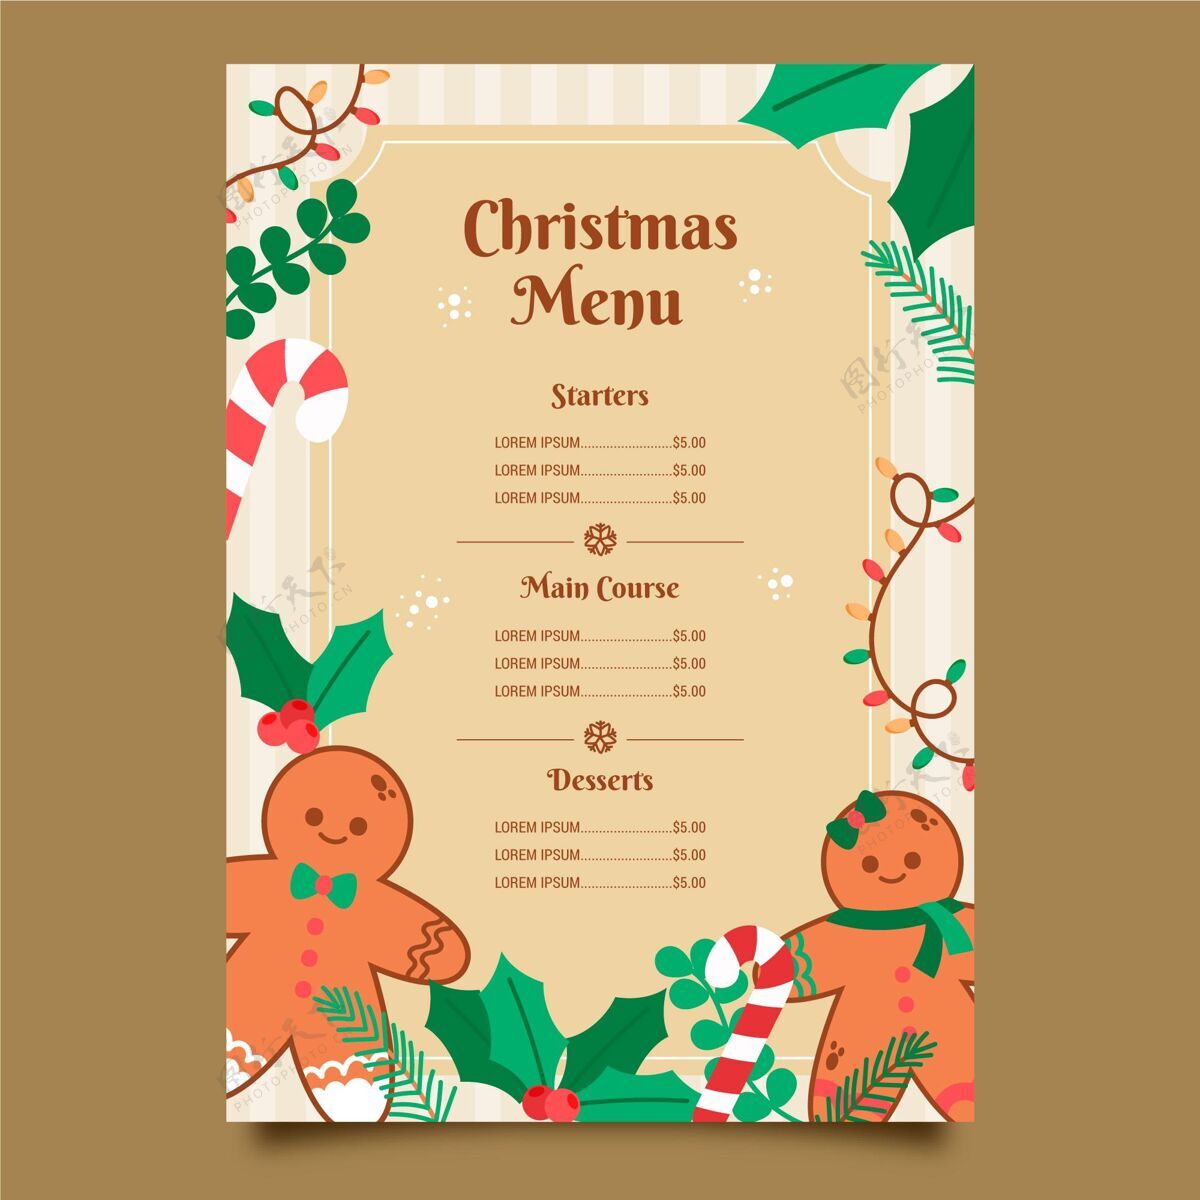 事件复古圣诞菜单模板圣诞节季节菜单